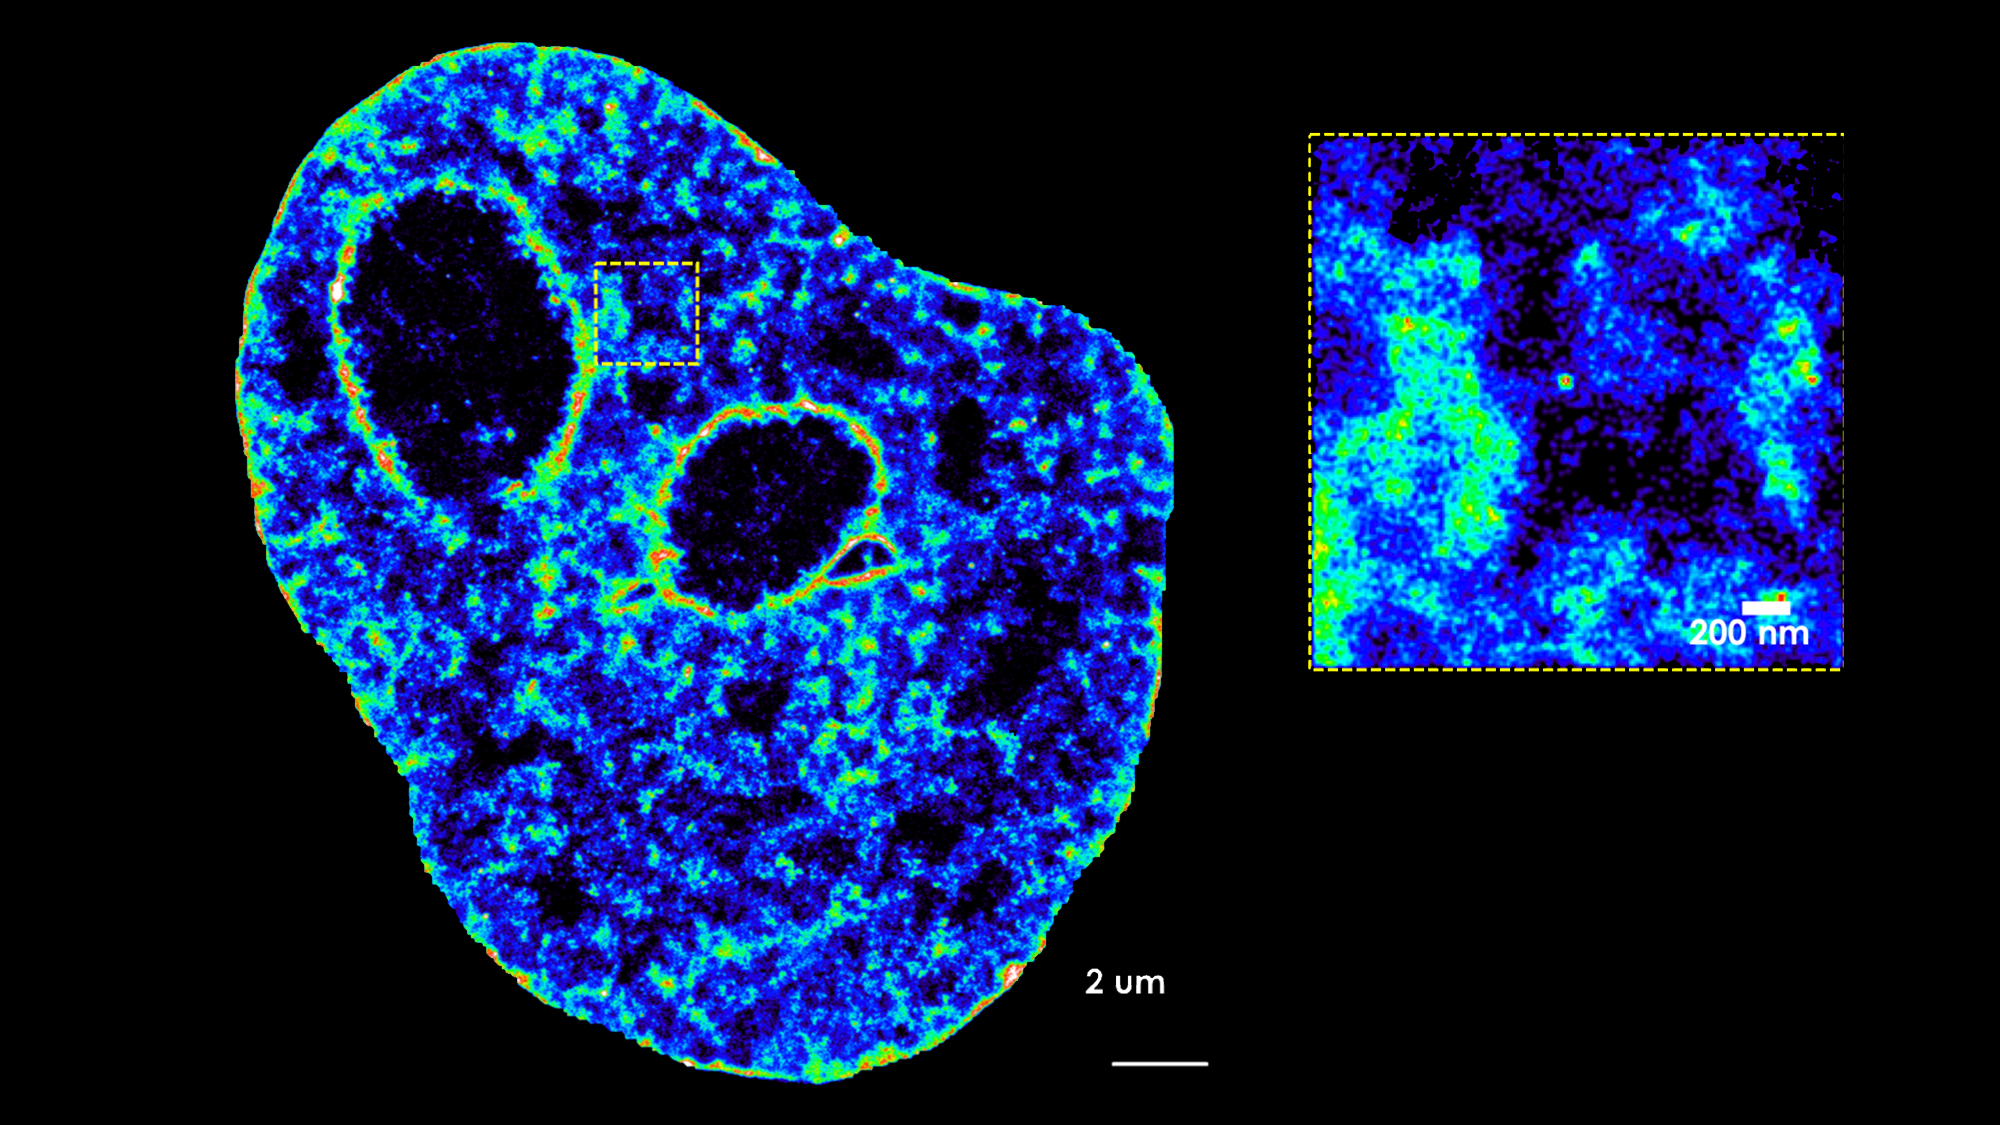 imatge del nucli d'una cèl·lula obtinguda per microscopia convencional i ampliació d'un fragment fet amb microsocòpia d'última generació.